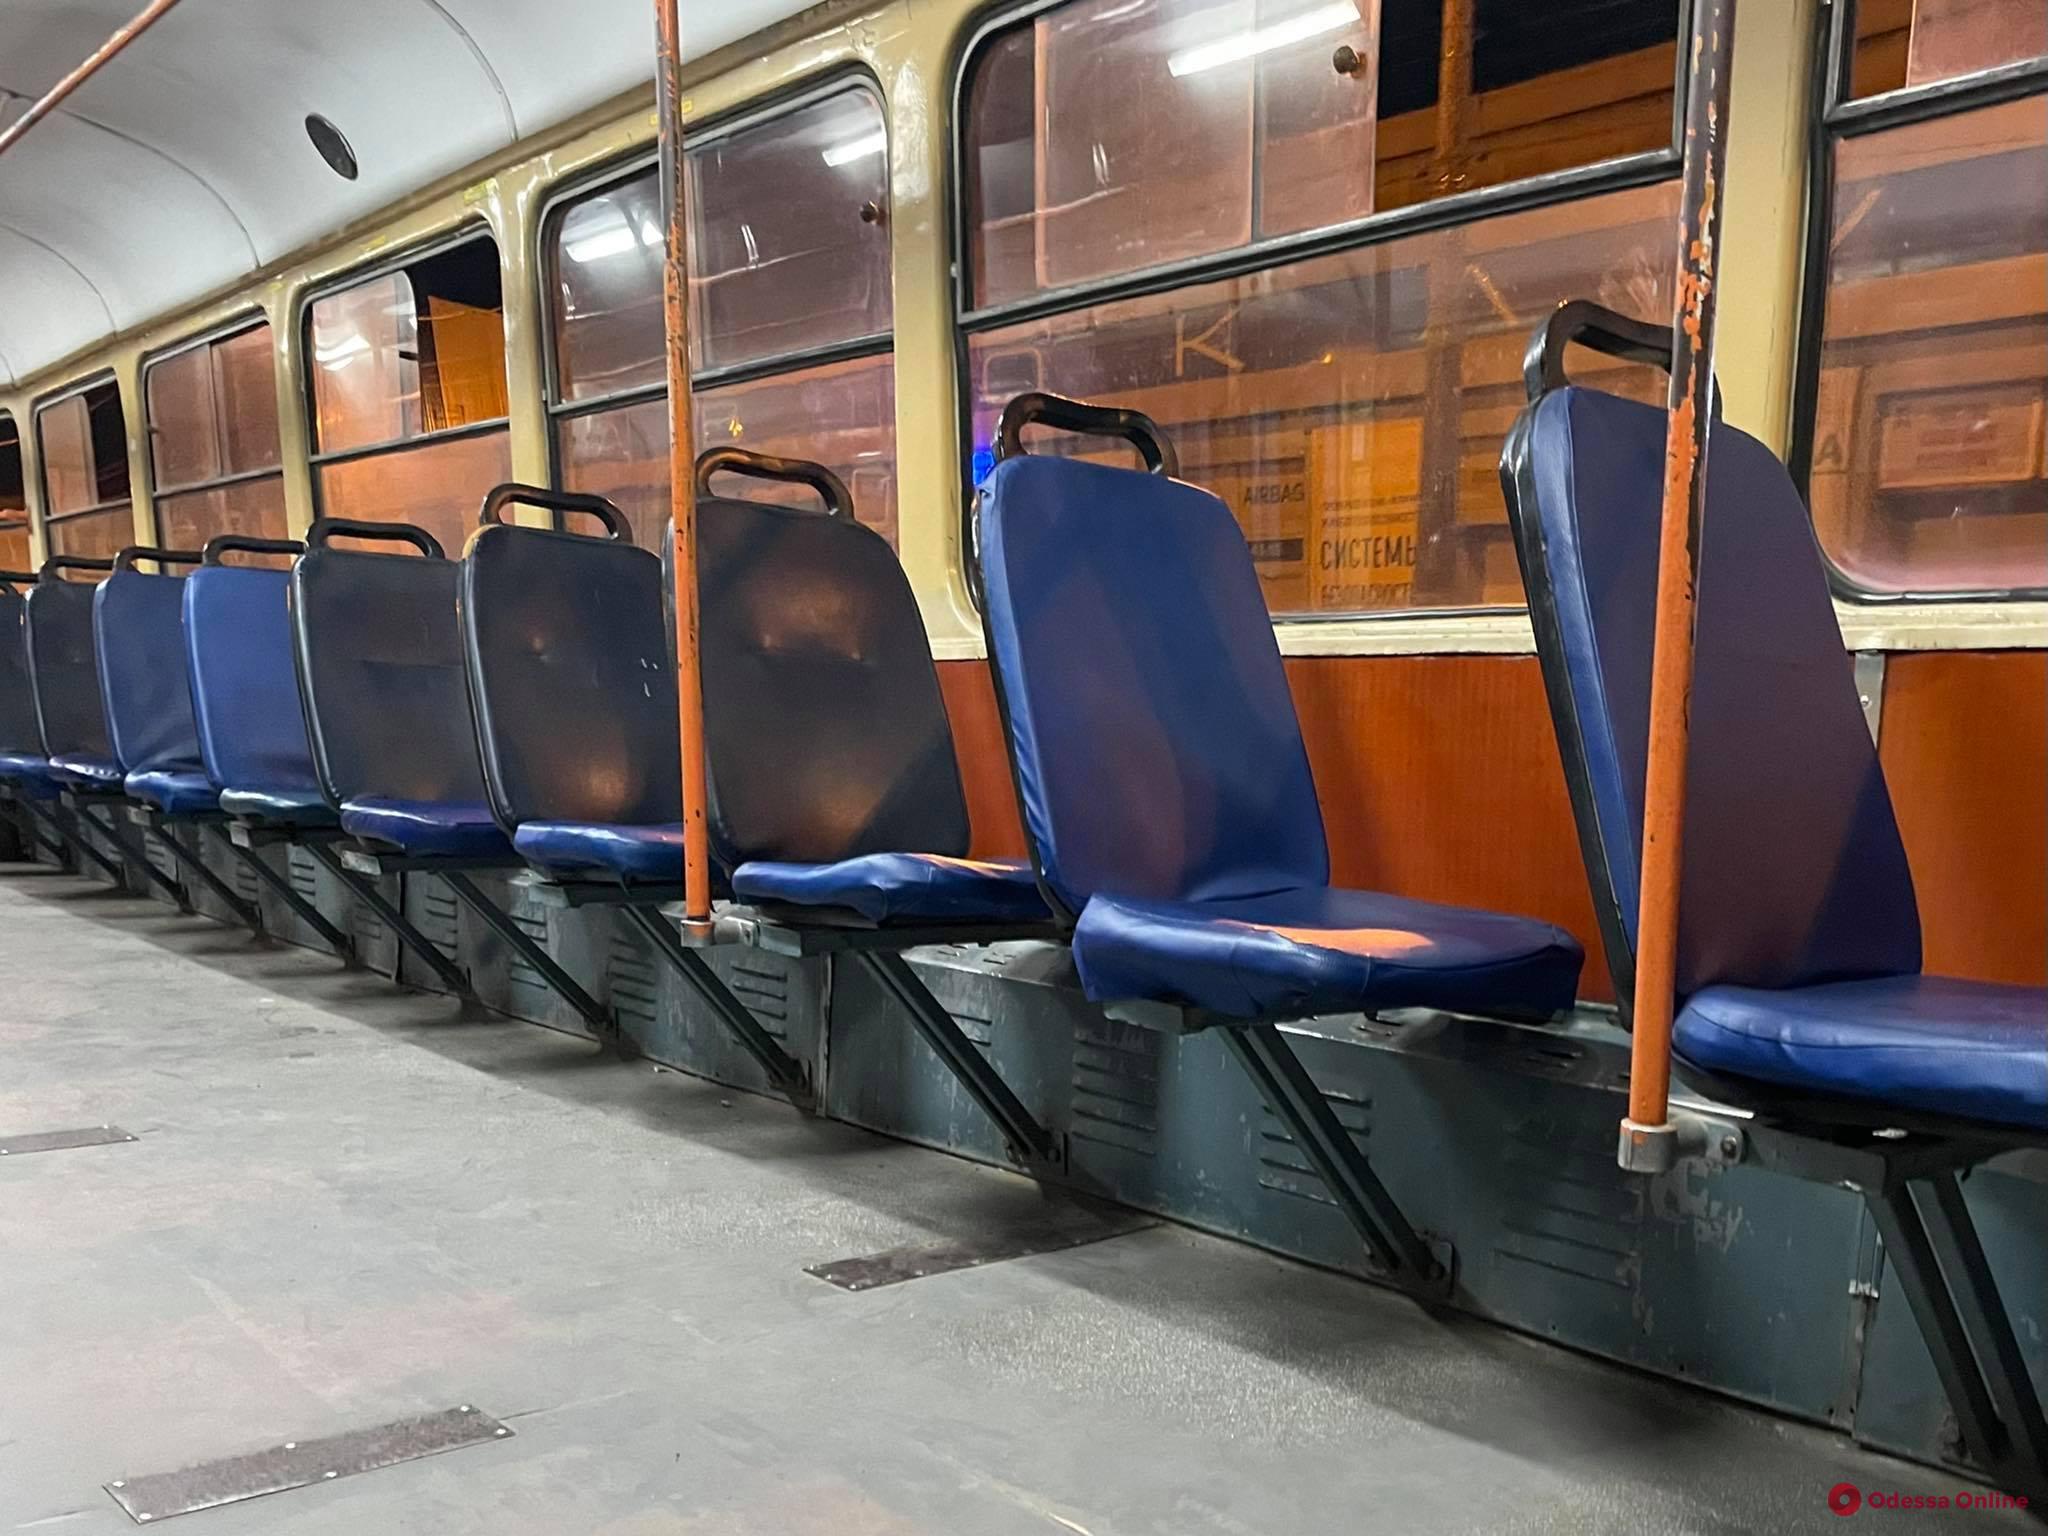 Сегодня в Одессе сократят время работы трамвая №10 из-за плановых работ ДТЭК